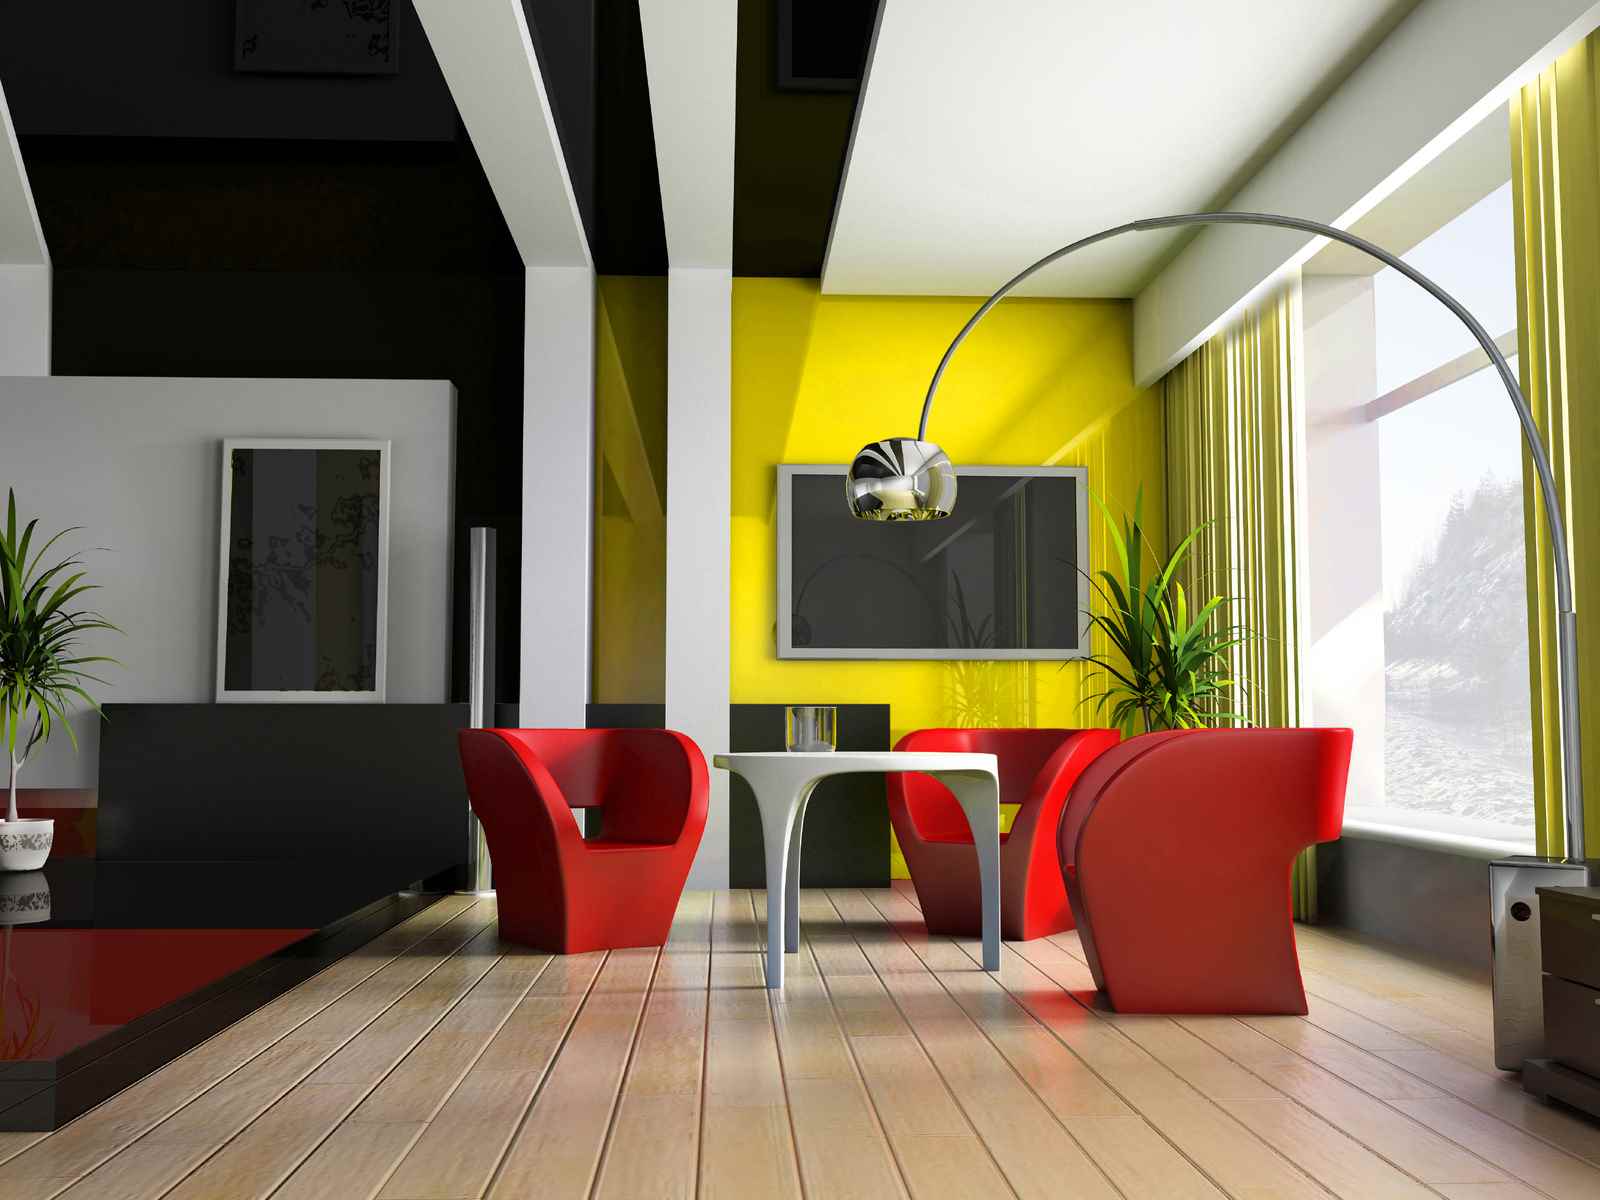 l'idée d'utiliser une couleur jaune inhabituelle à l'intérieur de l'appartement